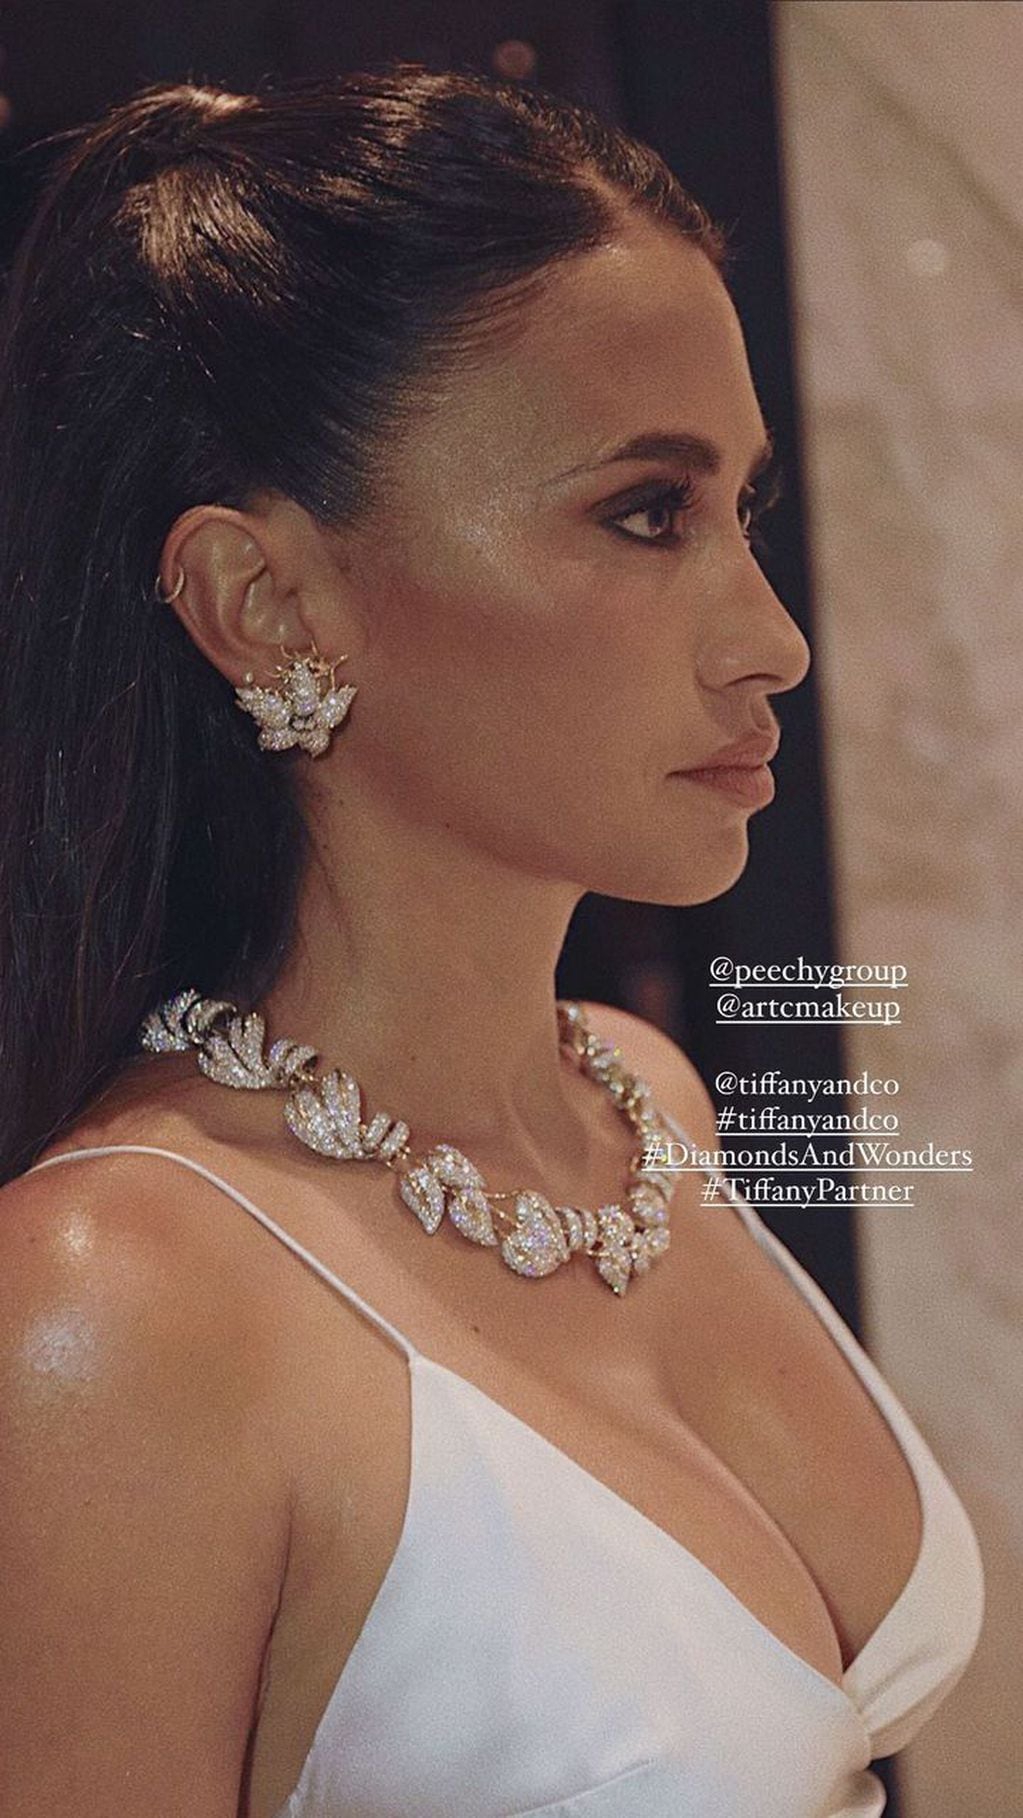 La influencer publicó una foto detallada del maquillaje y las joyas que usó.